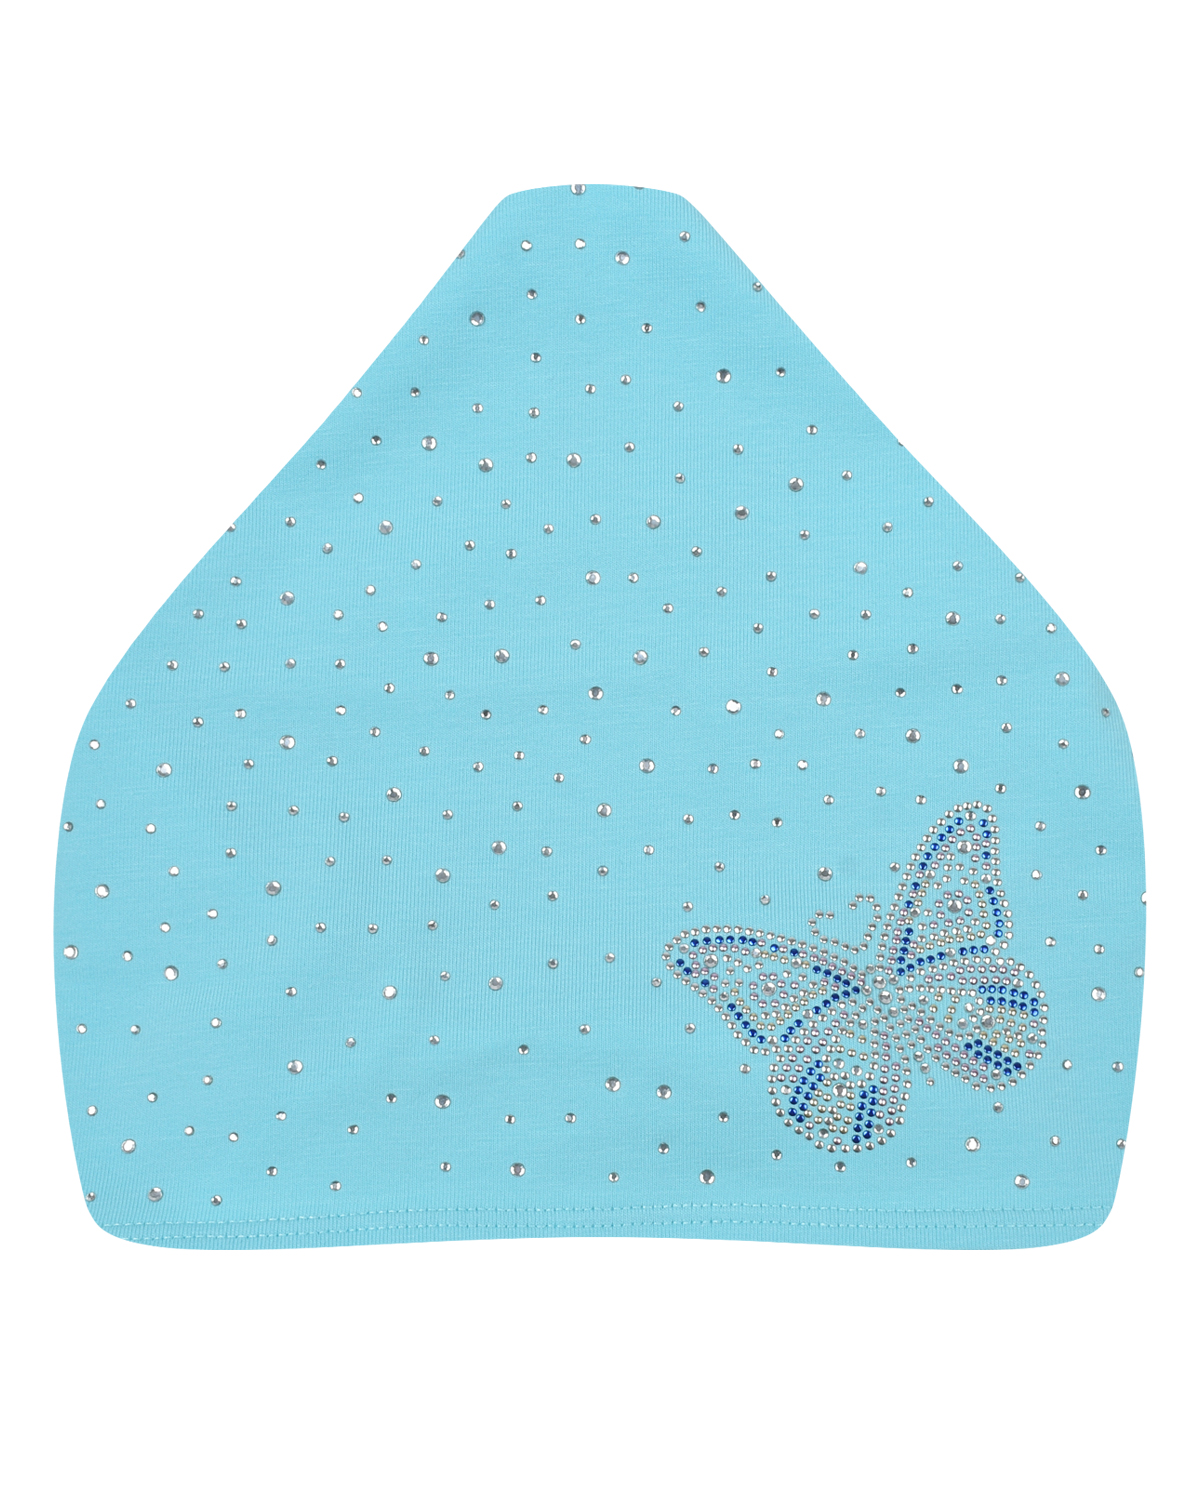 Голубая косынка с бабочкой из стразов Chobi, размер 49, цвет голубой